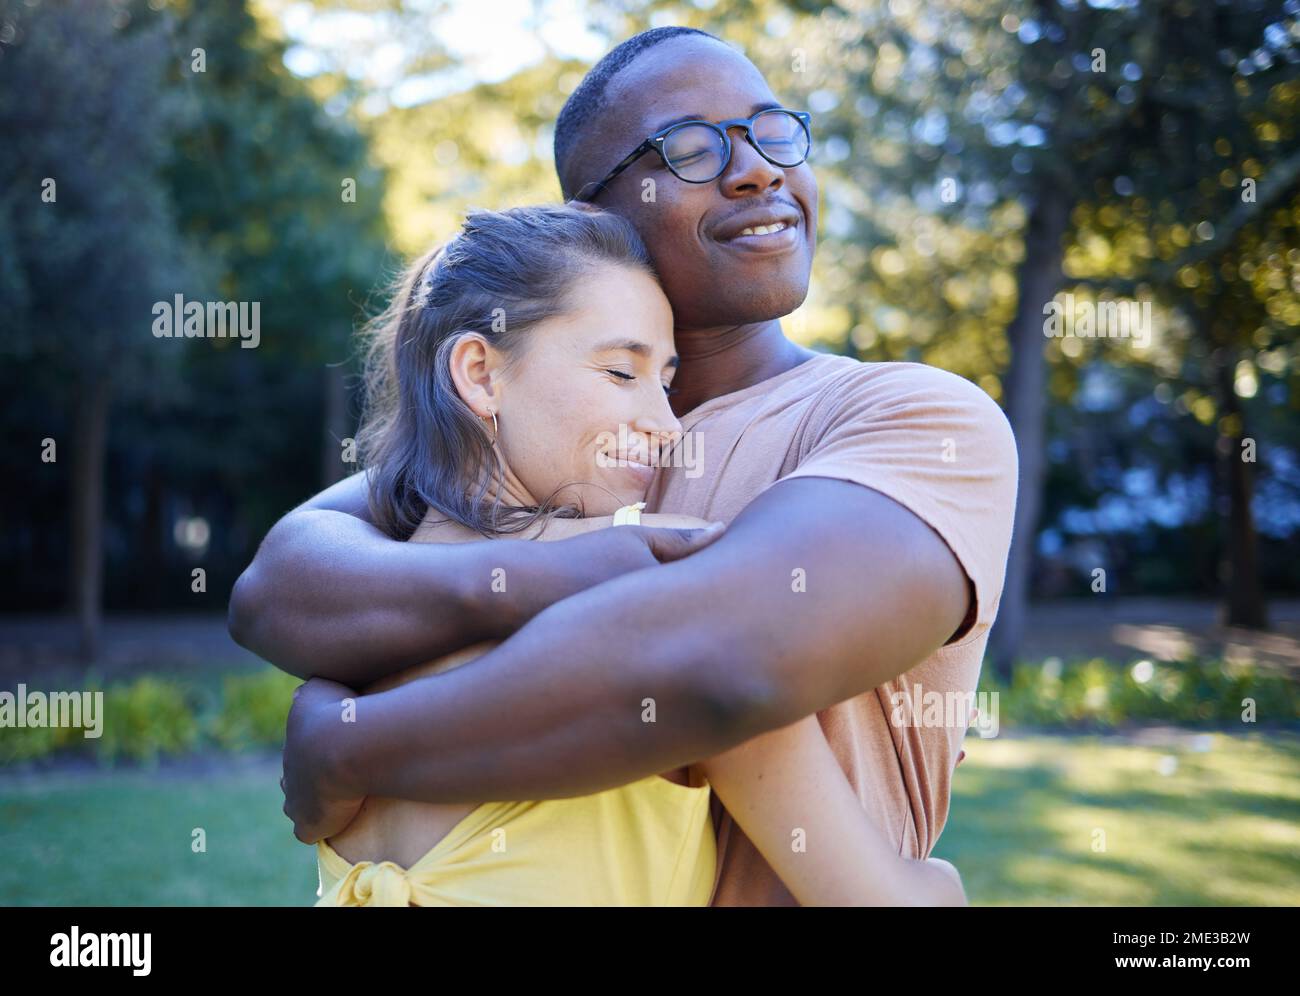 Schwarzer Mann, gemischtrassiges Paar und Umarmung auf dem Park Rasen mit Liebe, Sorgfalt und Verbundenheit für eine schöne Zeit, Wiedersehensfeier und Glück. Multikulturelle Umarmung, glücklich Stockfoto